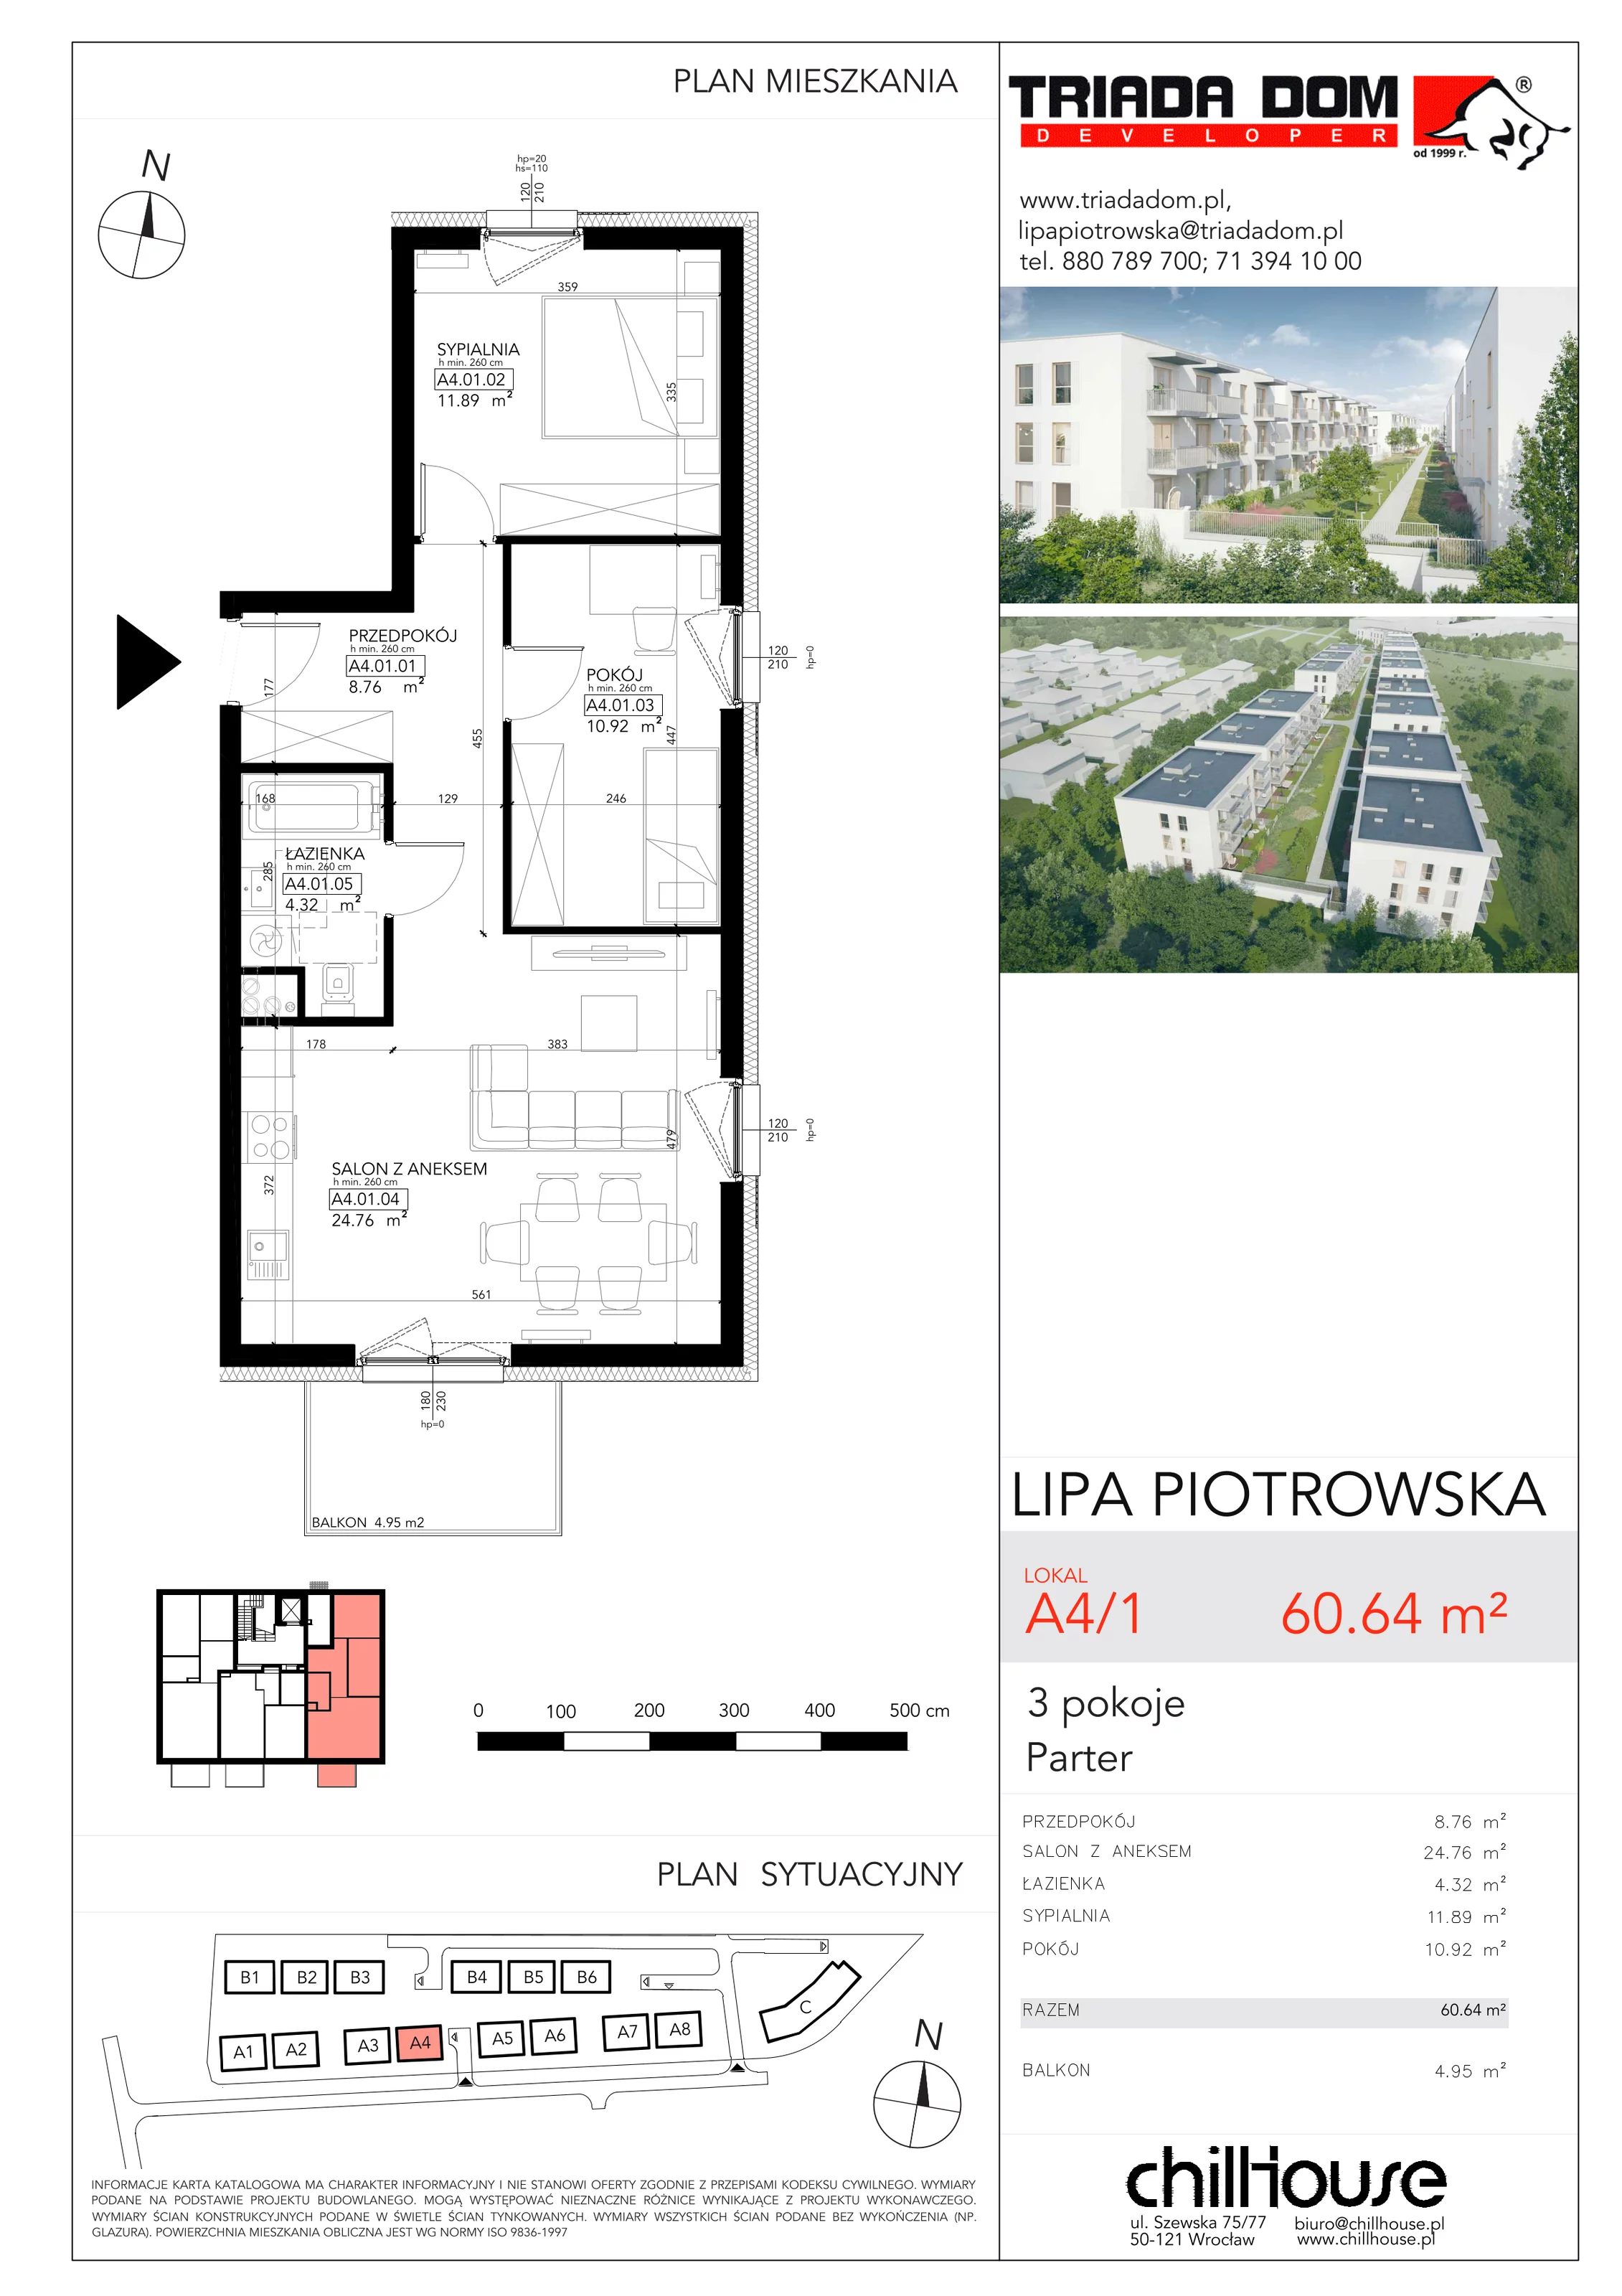 Mieszkanie 60,64 m², parter, oferta nr A41, Lipa Piotrowska, Wrocław, Lipa Piotrowska, ul. Lawendowa / Melisowa